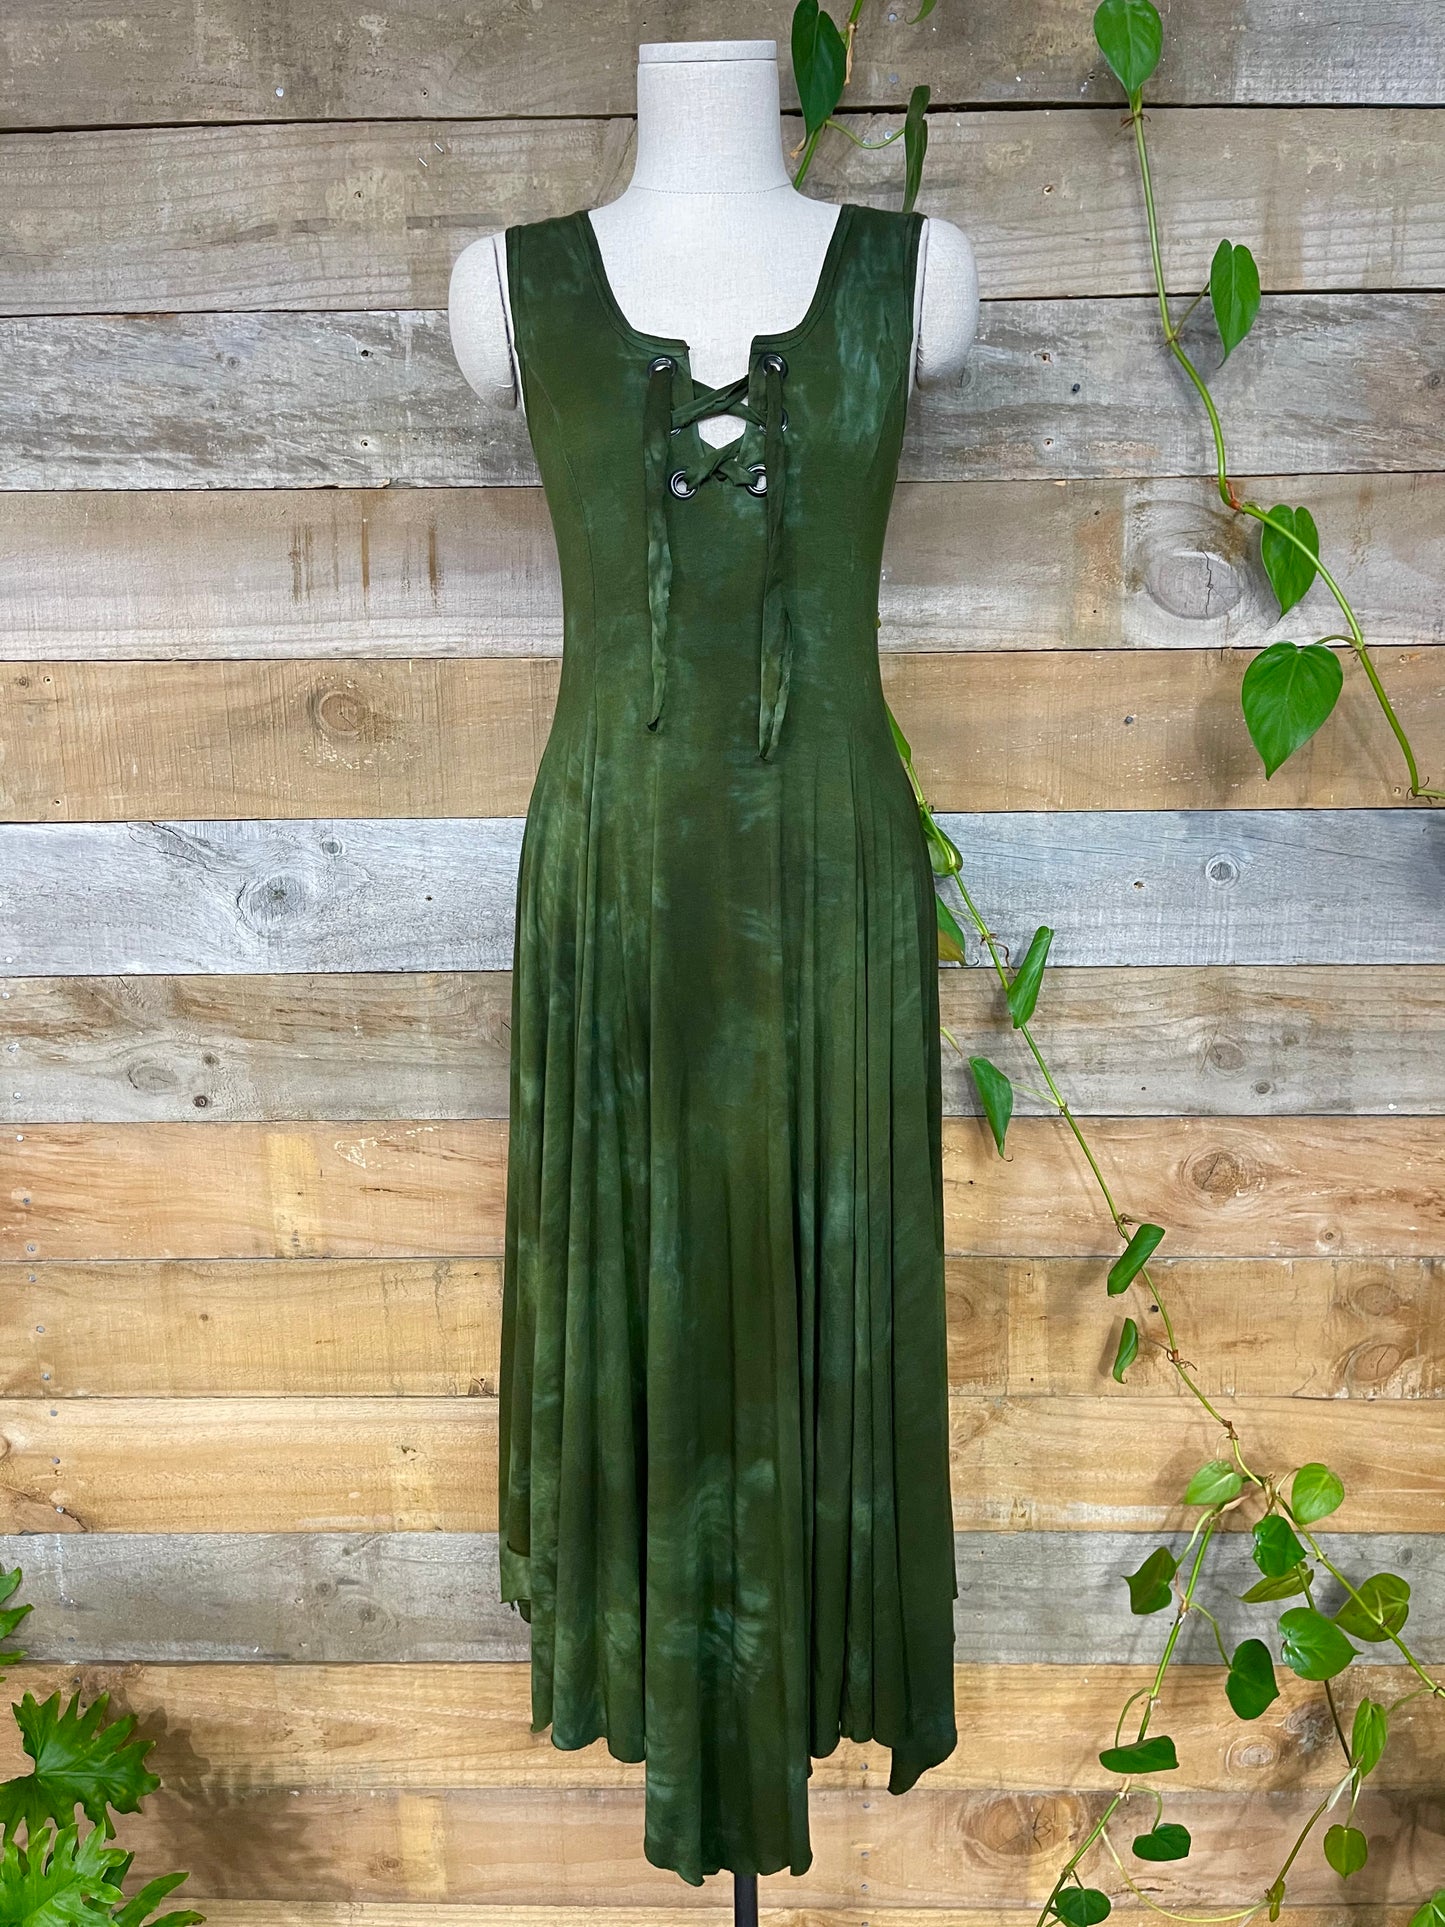 Moss Mountain Maiden Dress